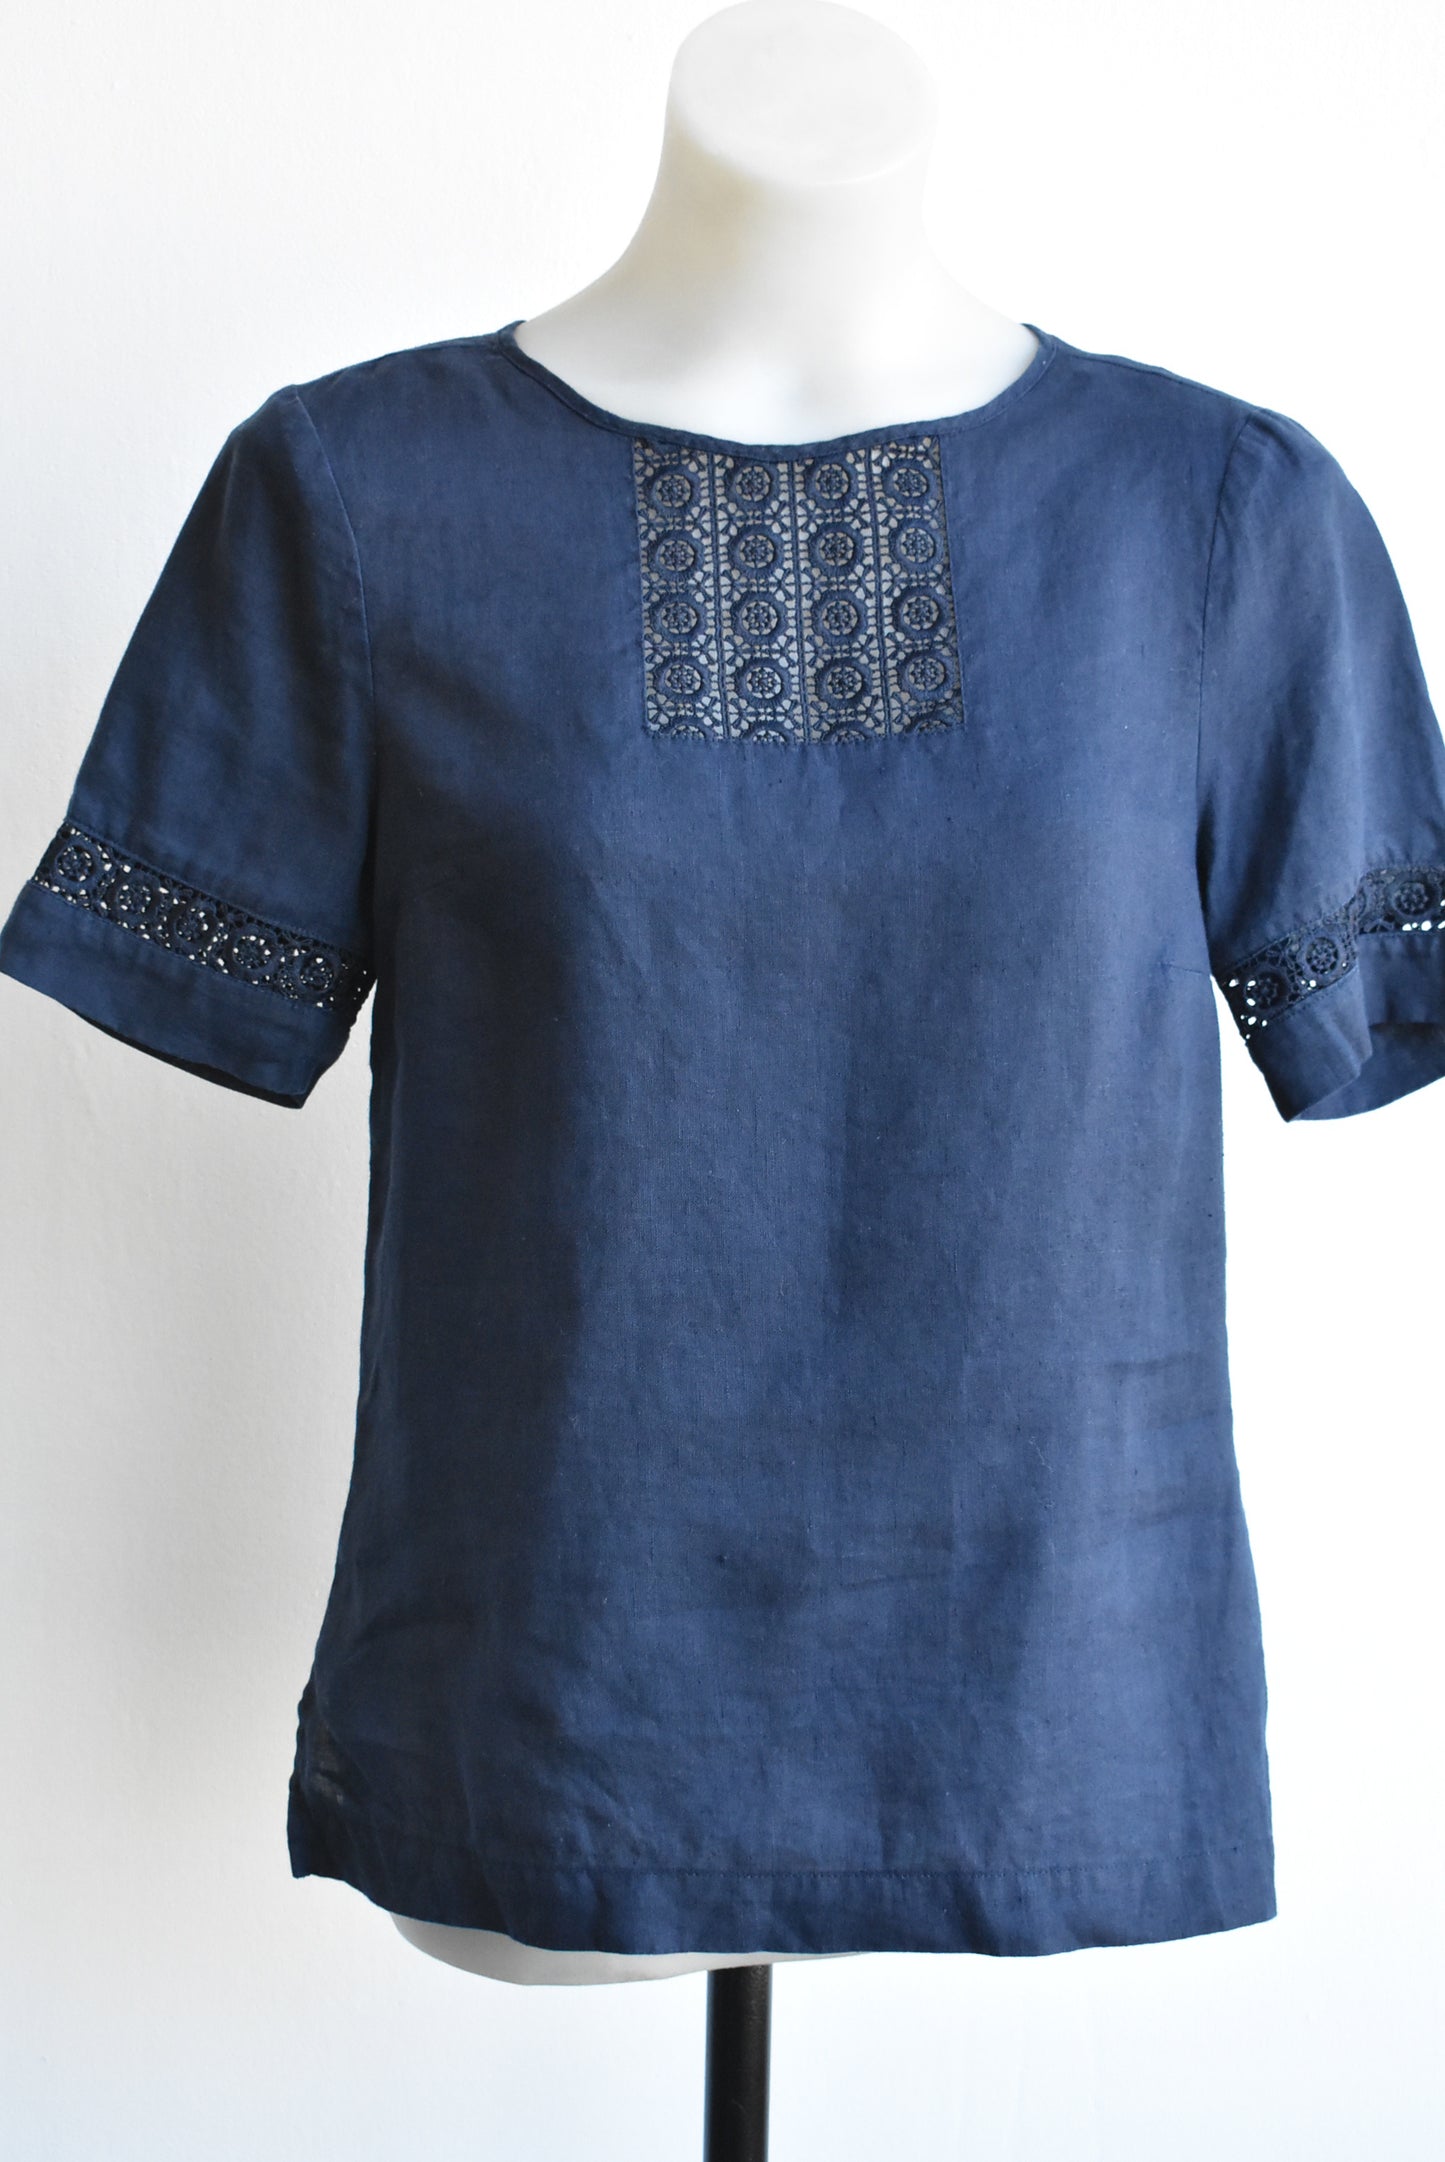 Jacqui E blue linen lace panel top, size 6